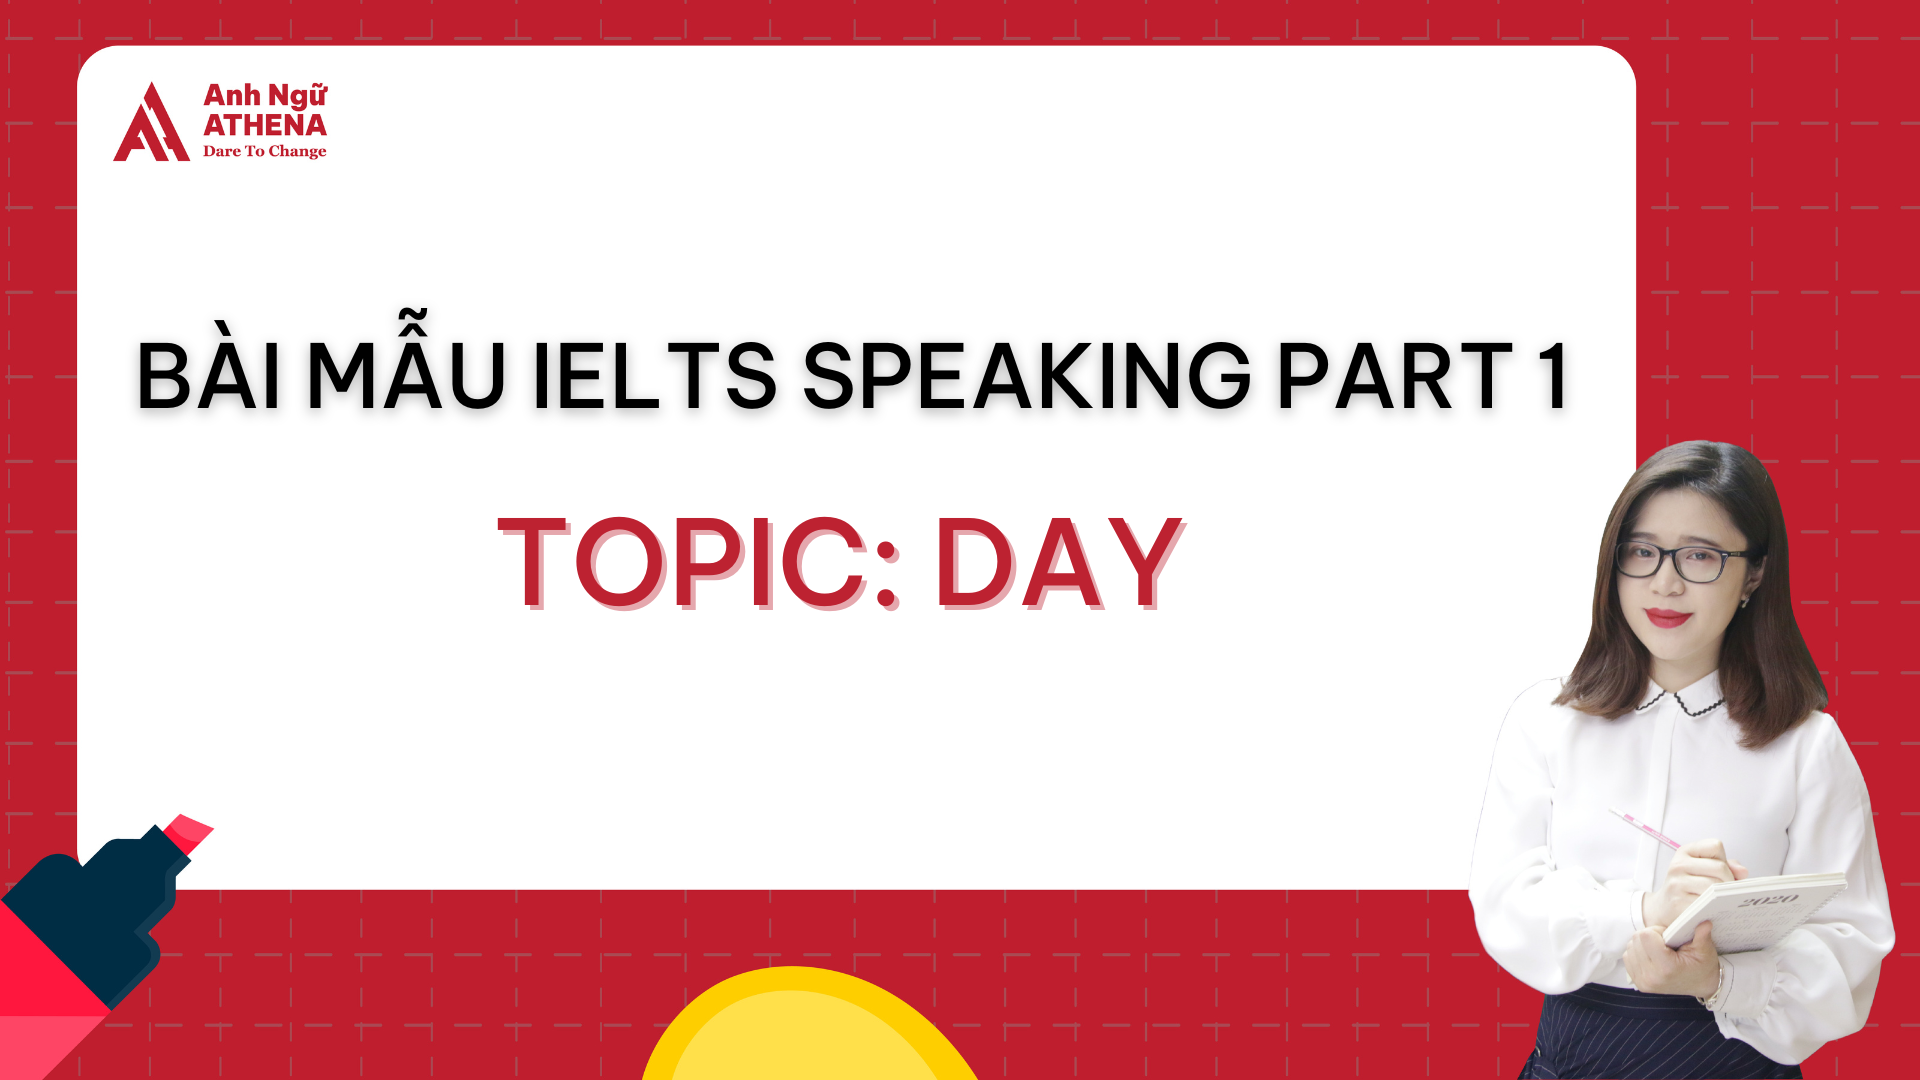 Bài mẫu IELTS Speaking Part 1 - Topic: Day